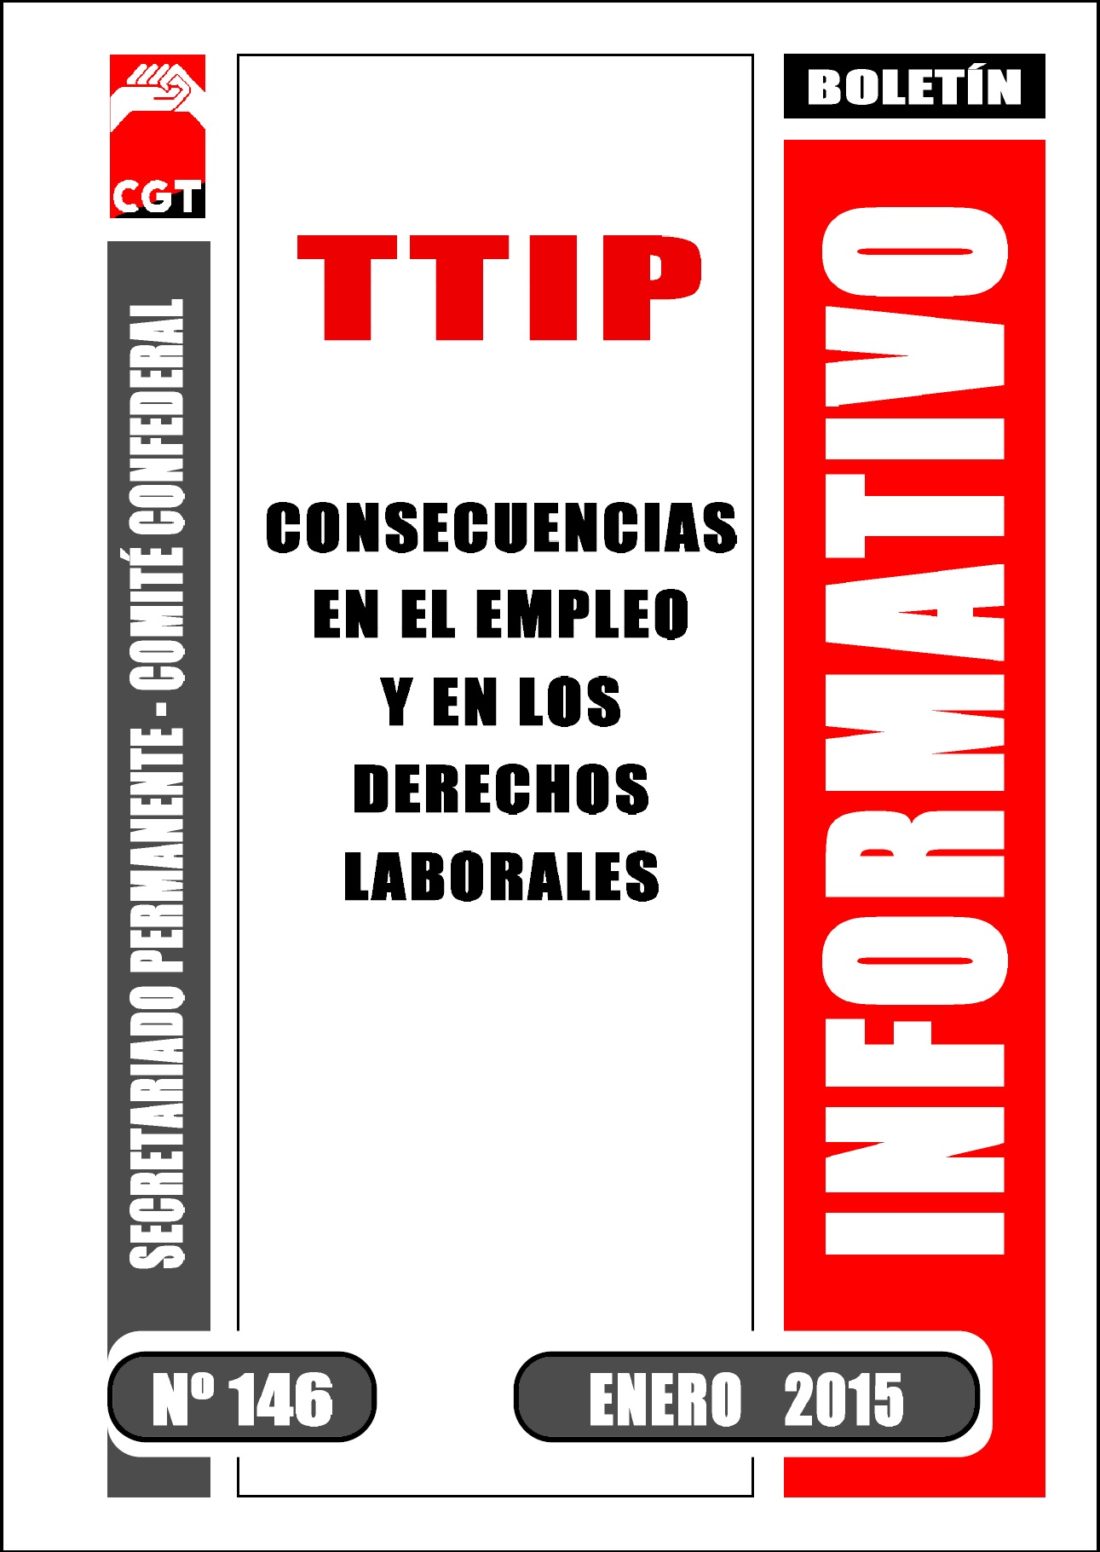 Boletín 146: El TTIP y sus consecuencias para el empleo y los derechos laborales